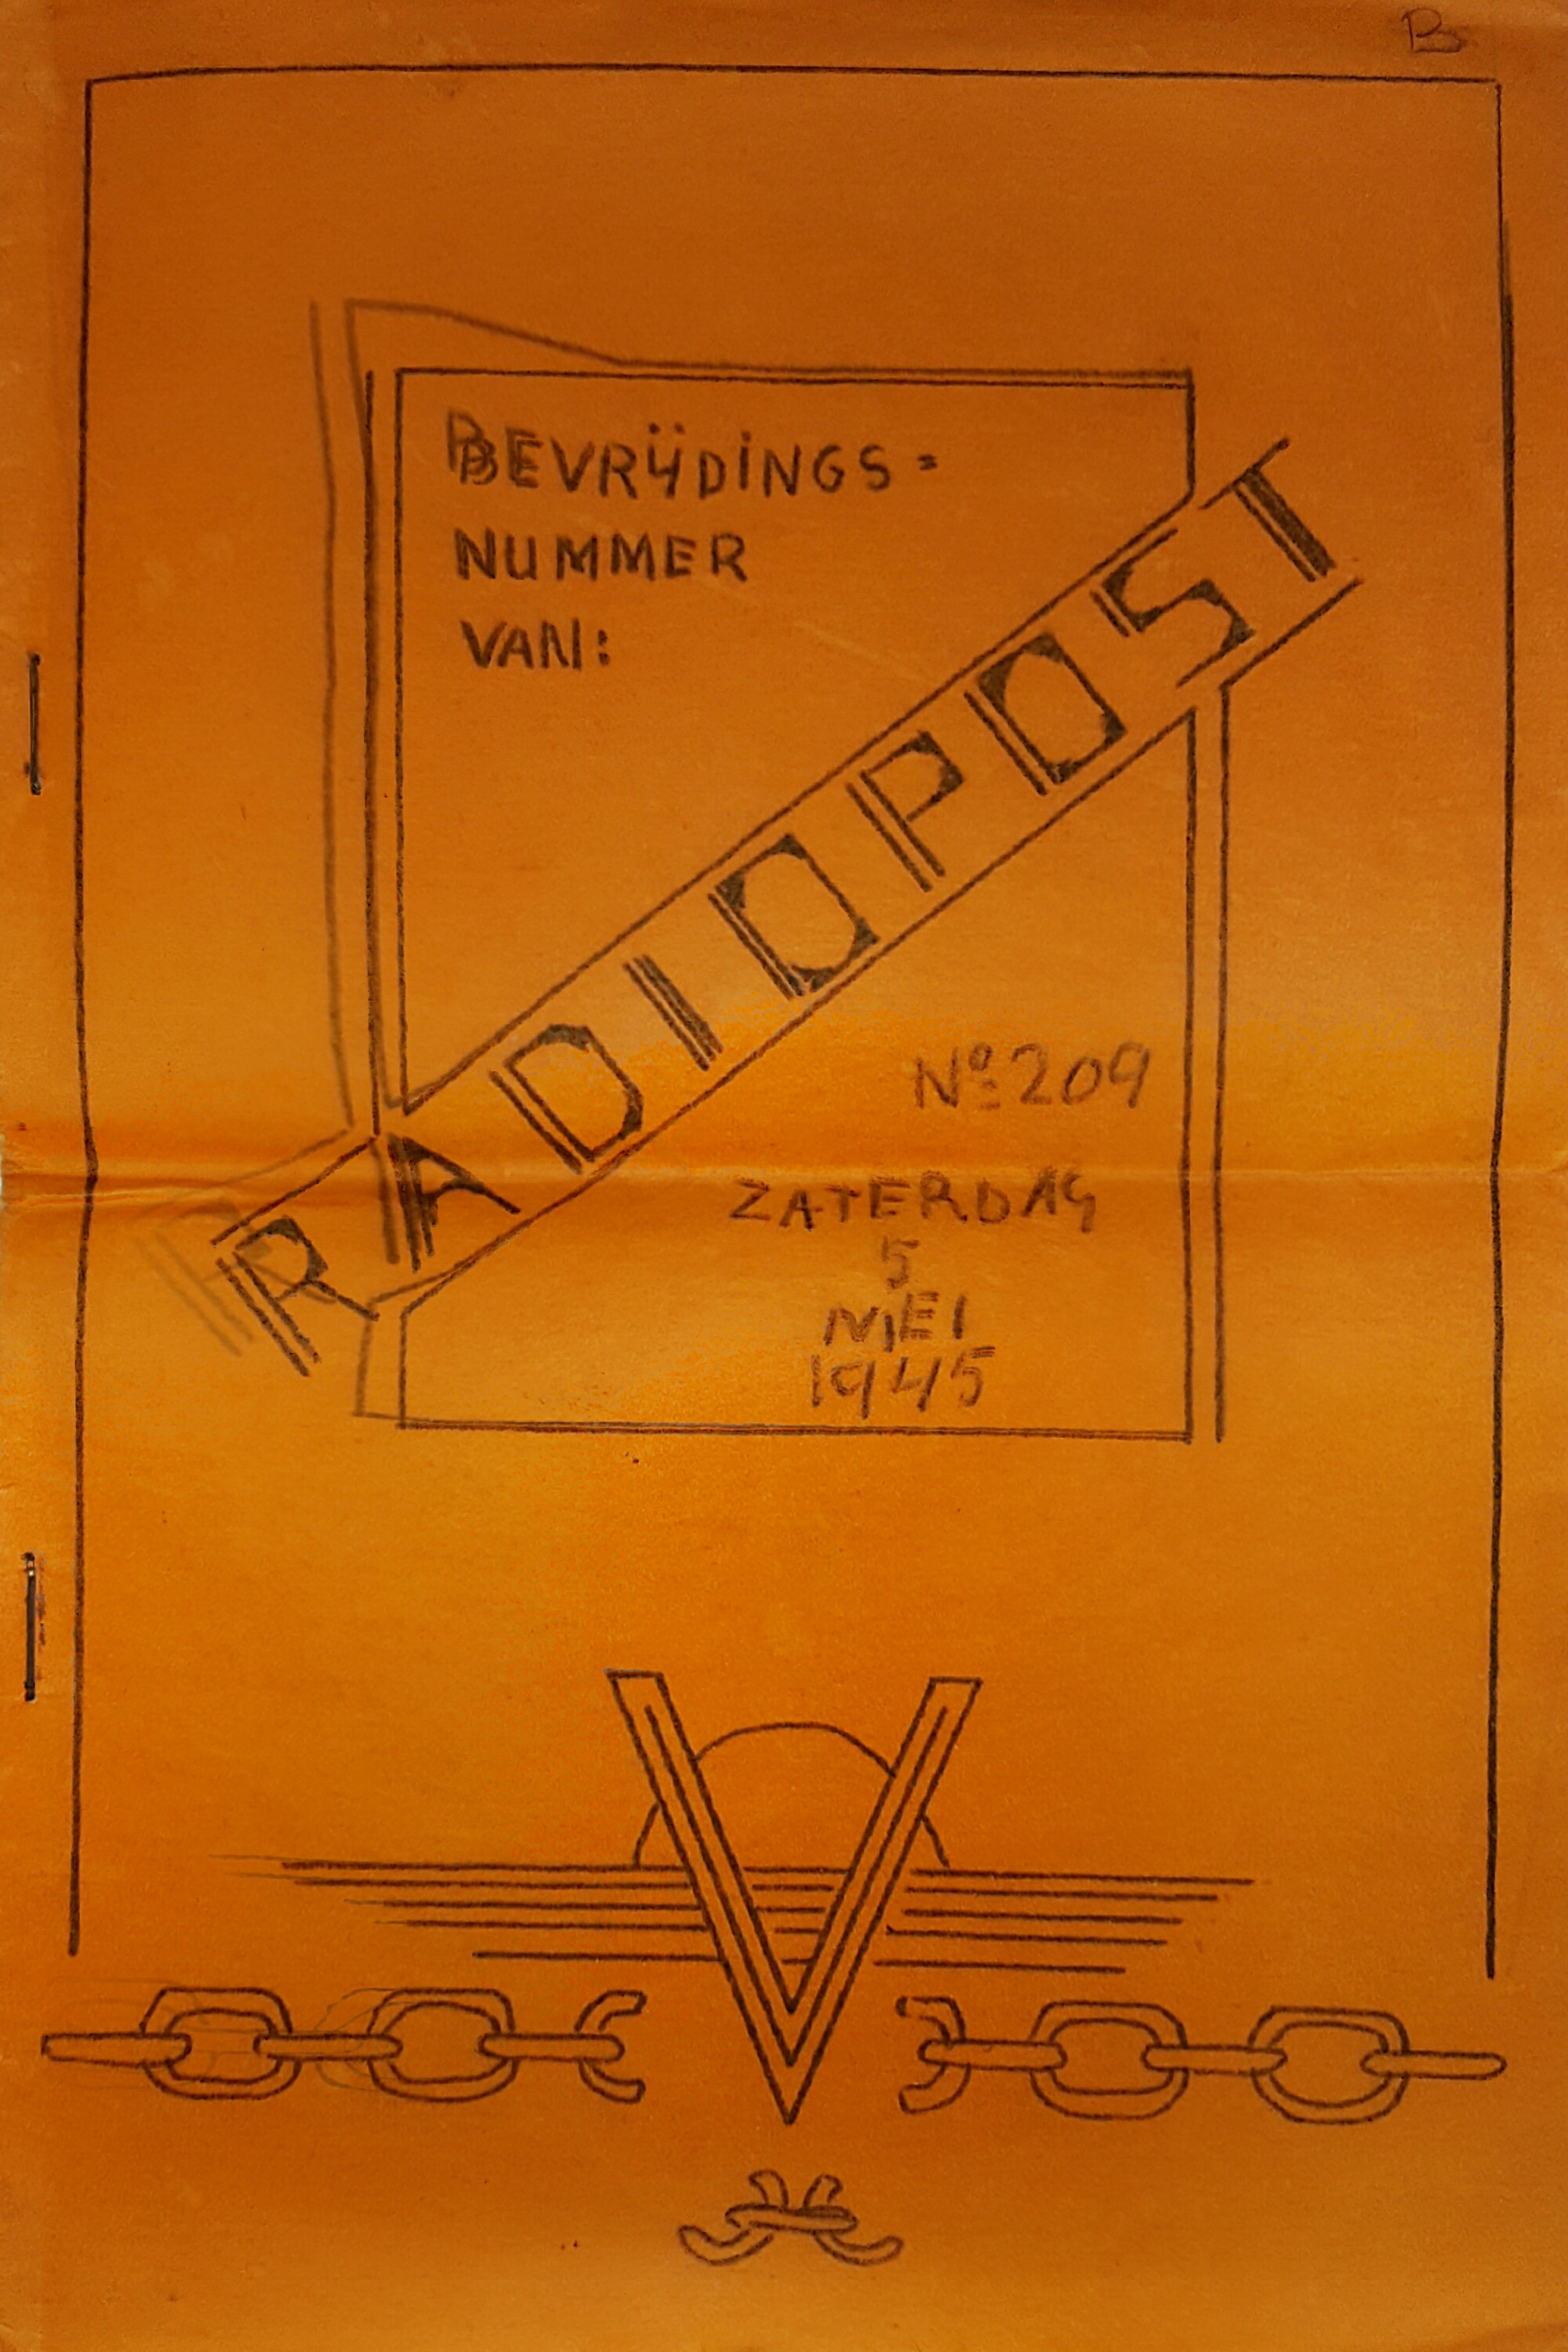 Bevrijdingsnummer van: RADIOPOST no. 209, zaterdag 5 mei 1945